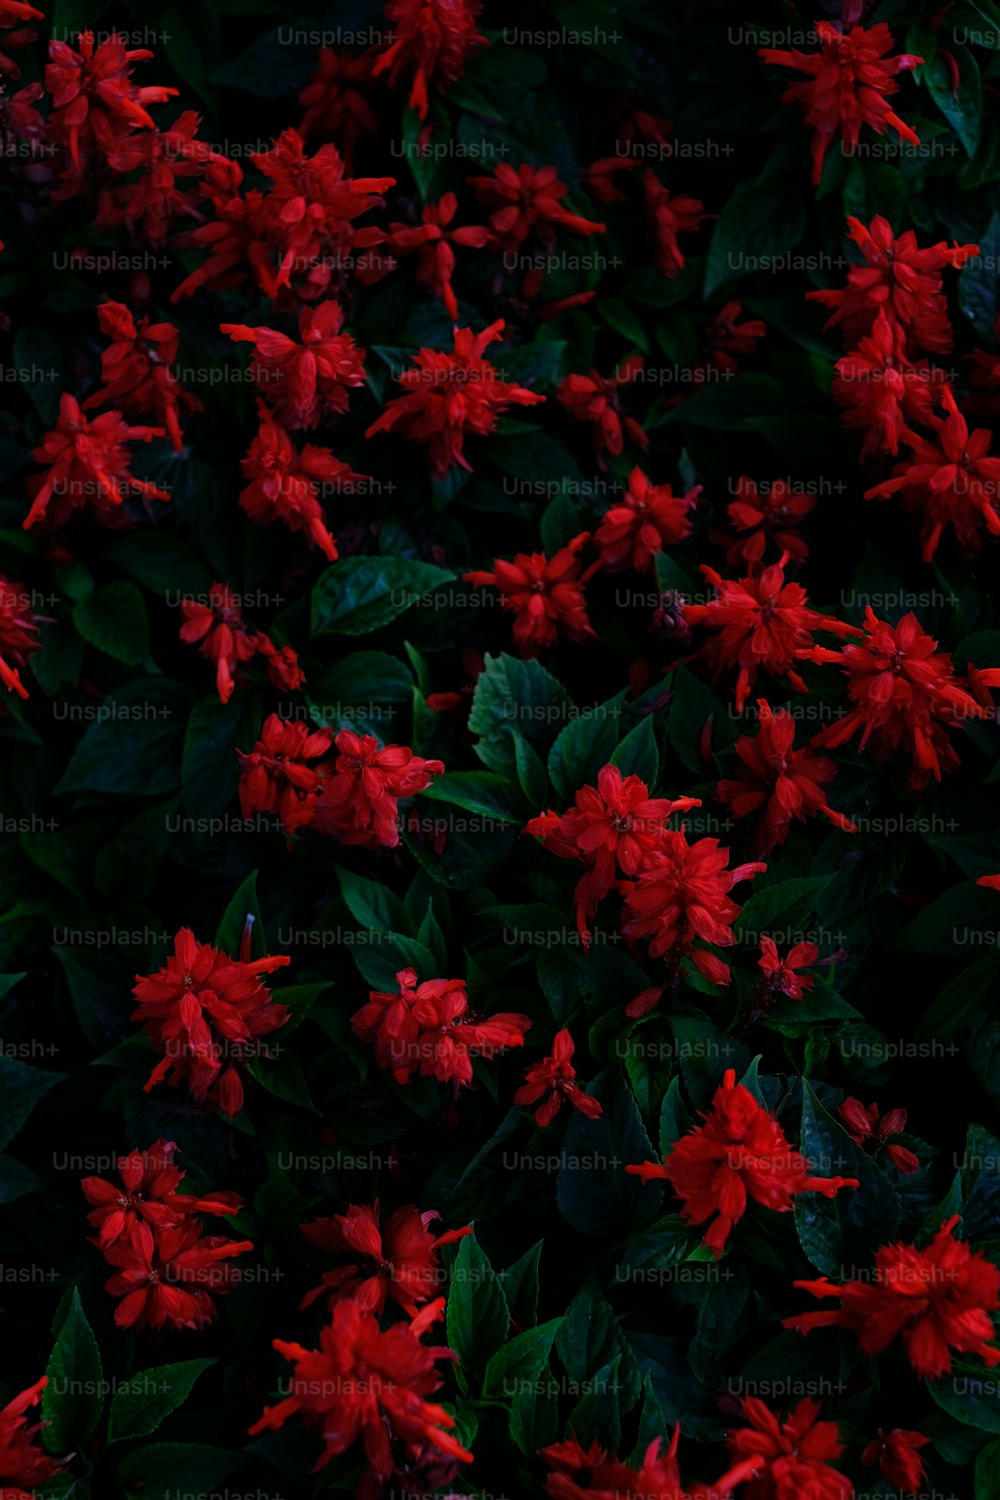 un bouquet de fleurs rouges aux feuilles vertes